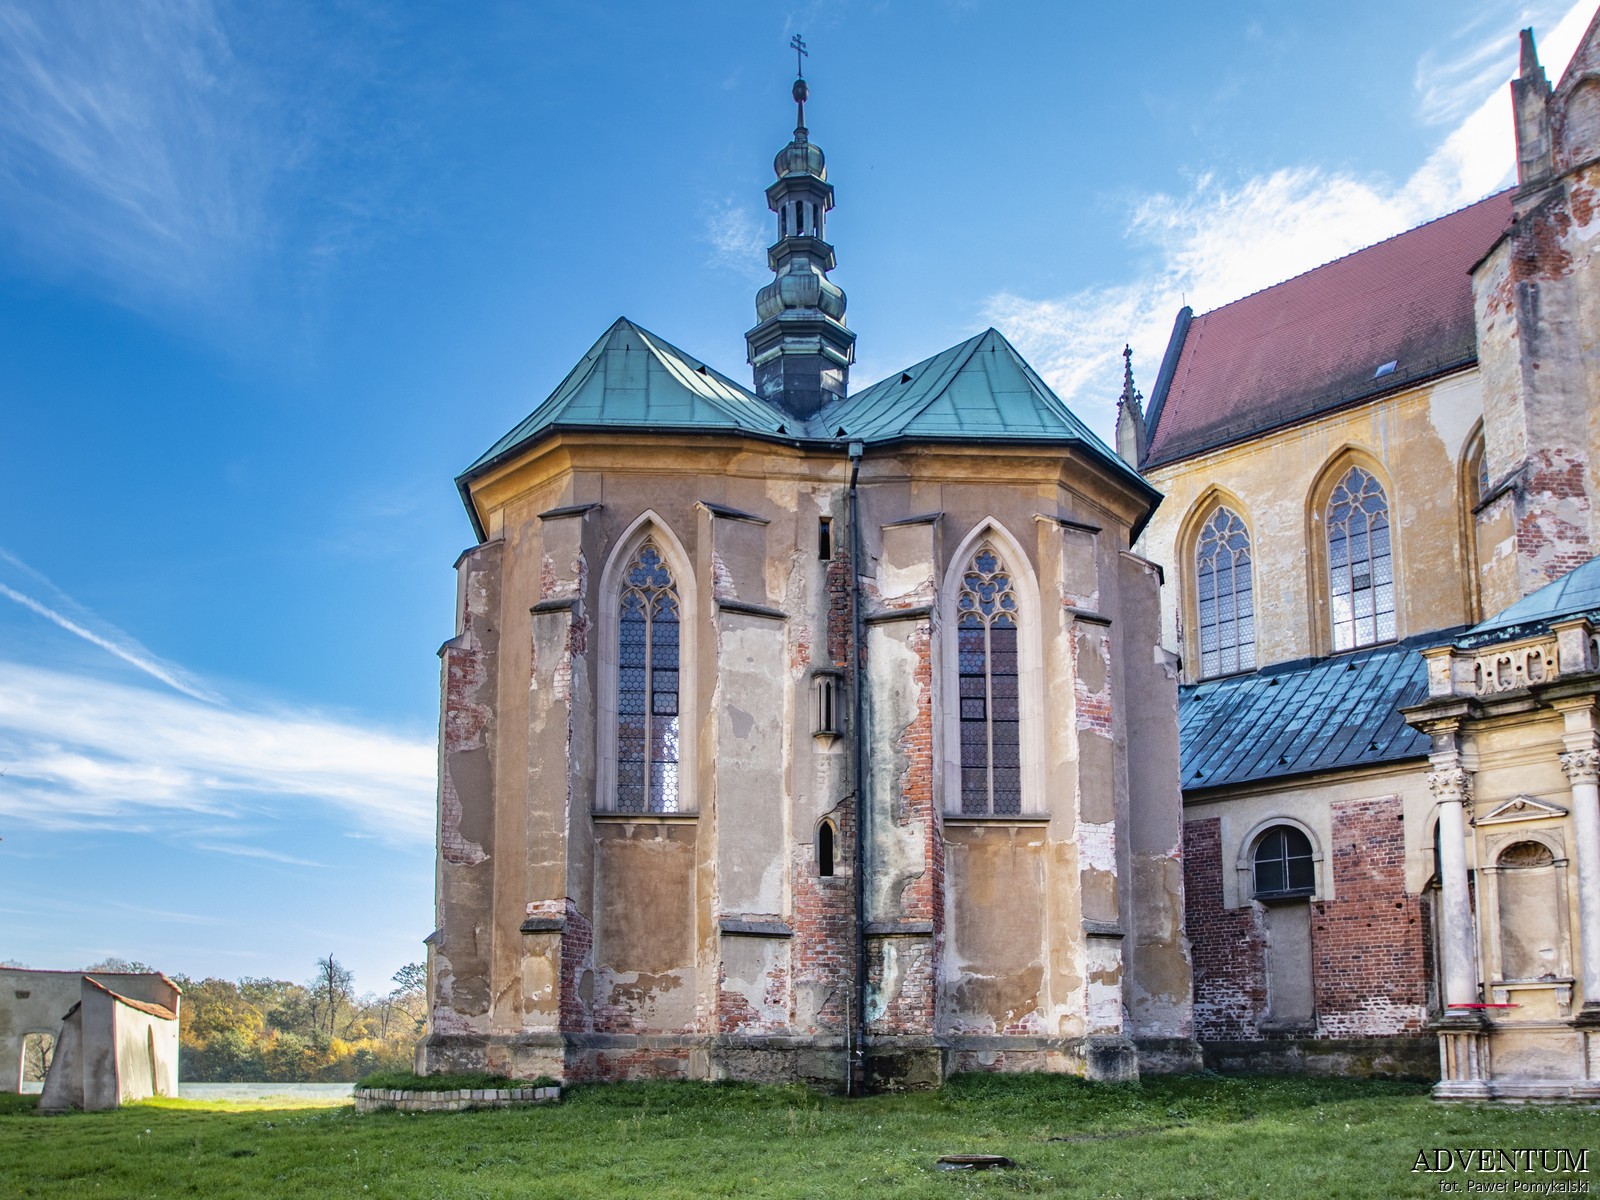 Kaplica Klasztor Zwiedzanie Kościół Imprezy Atrakcje Dolny śląsk Solnośląskie pomysł wycieczka